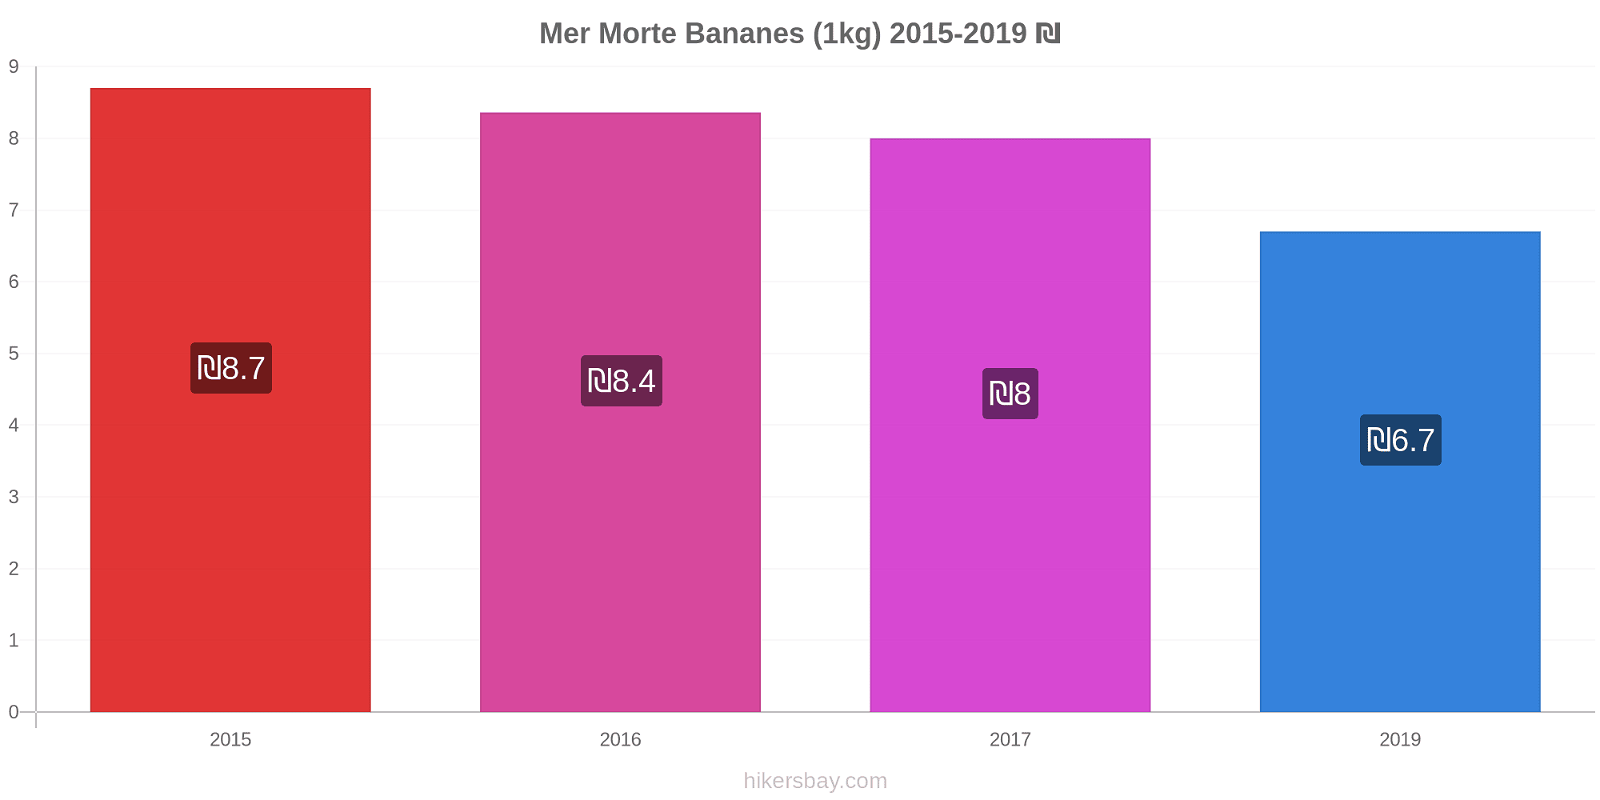 Mer Morte changements de prix Bananes (1kg) hikersbay.com